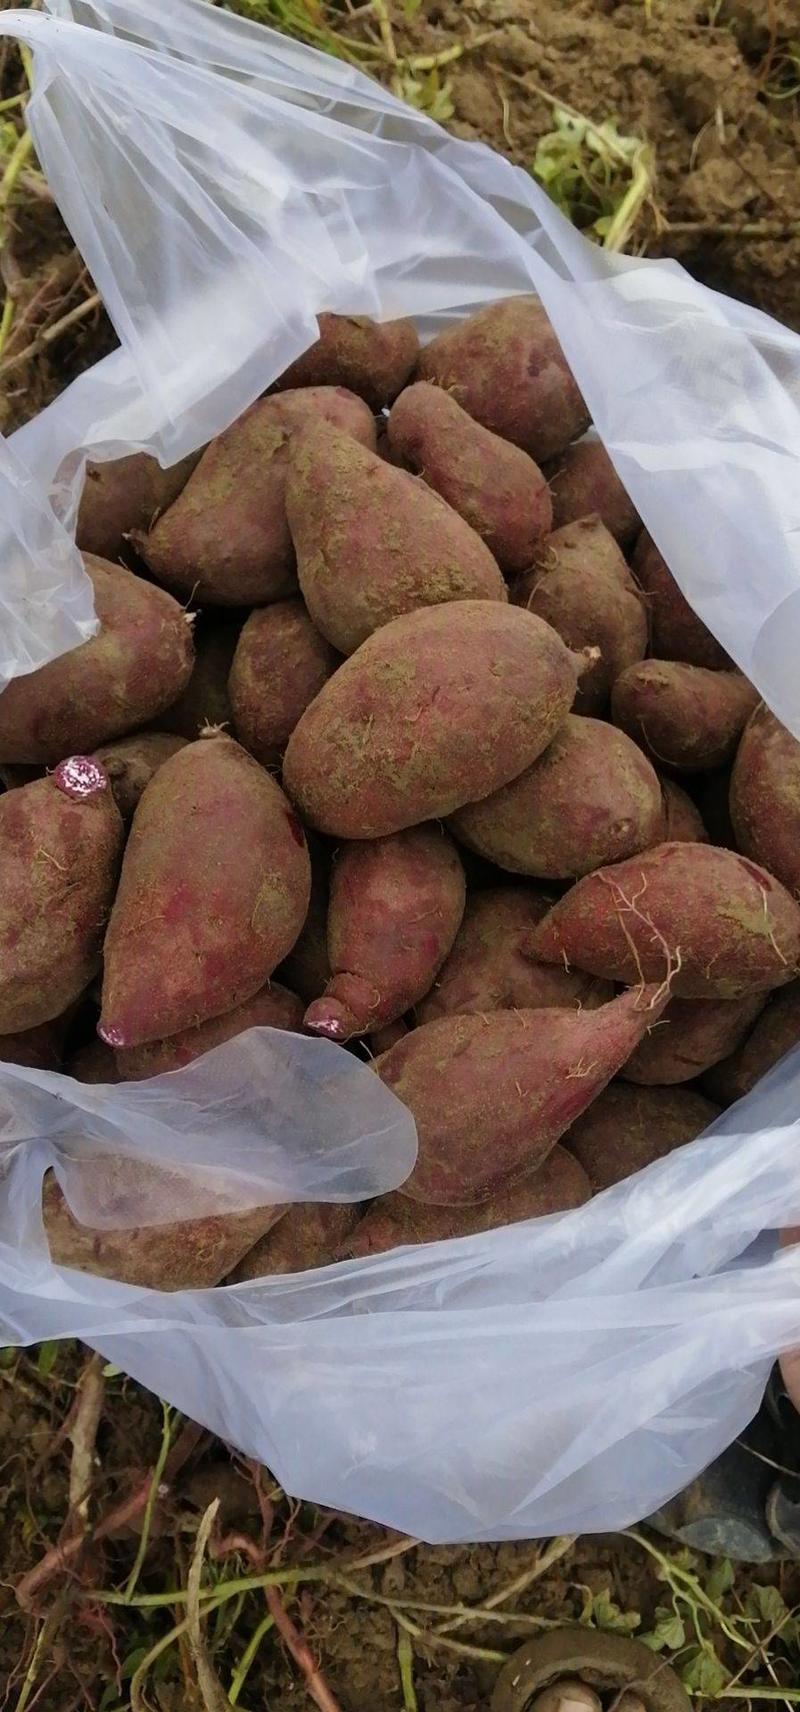 【热卖】广东2代小花叶紫薯大量上市价格美丽欢迎咨询